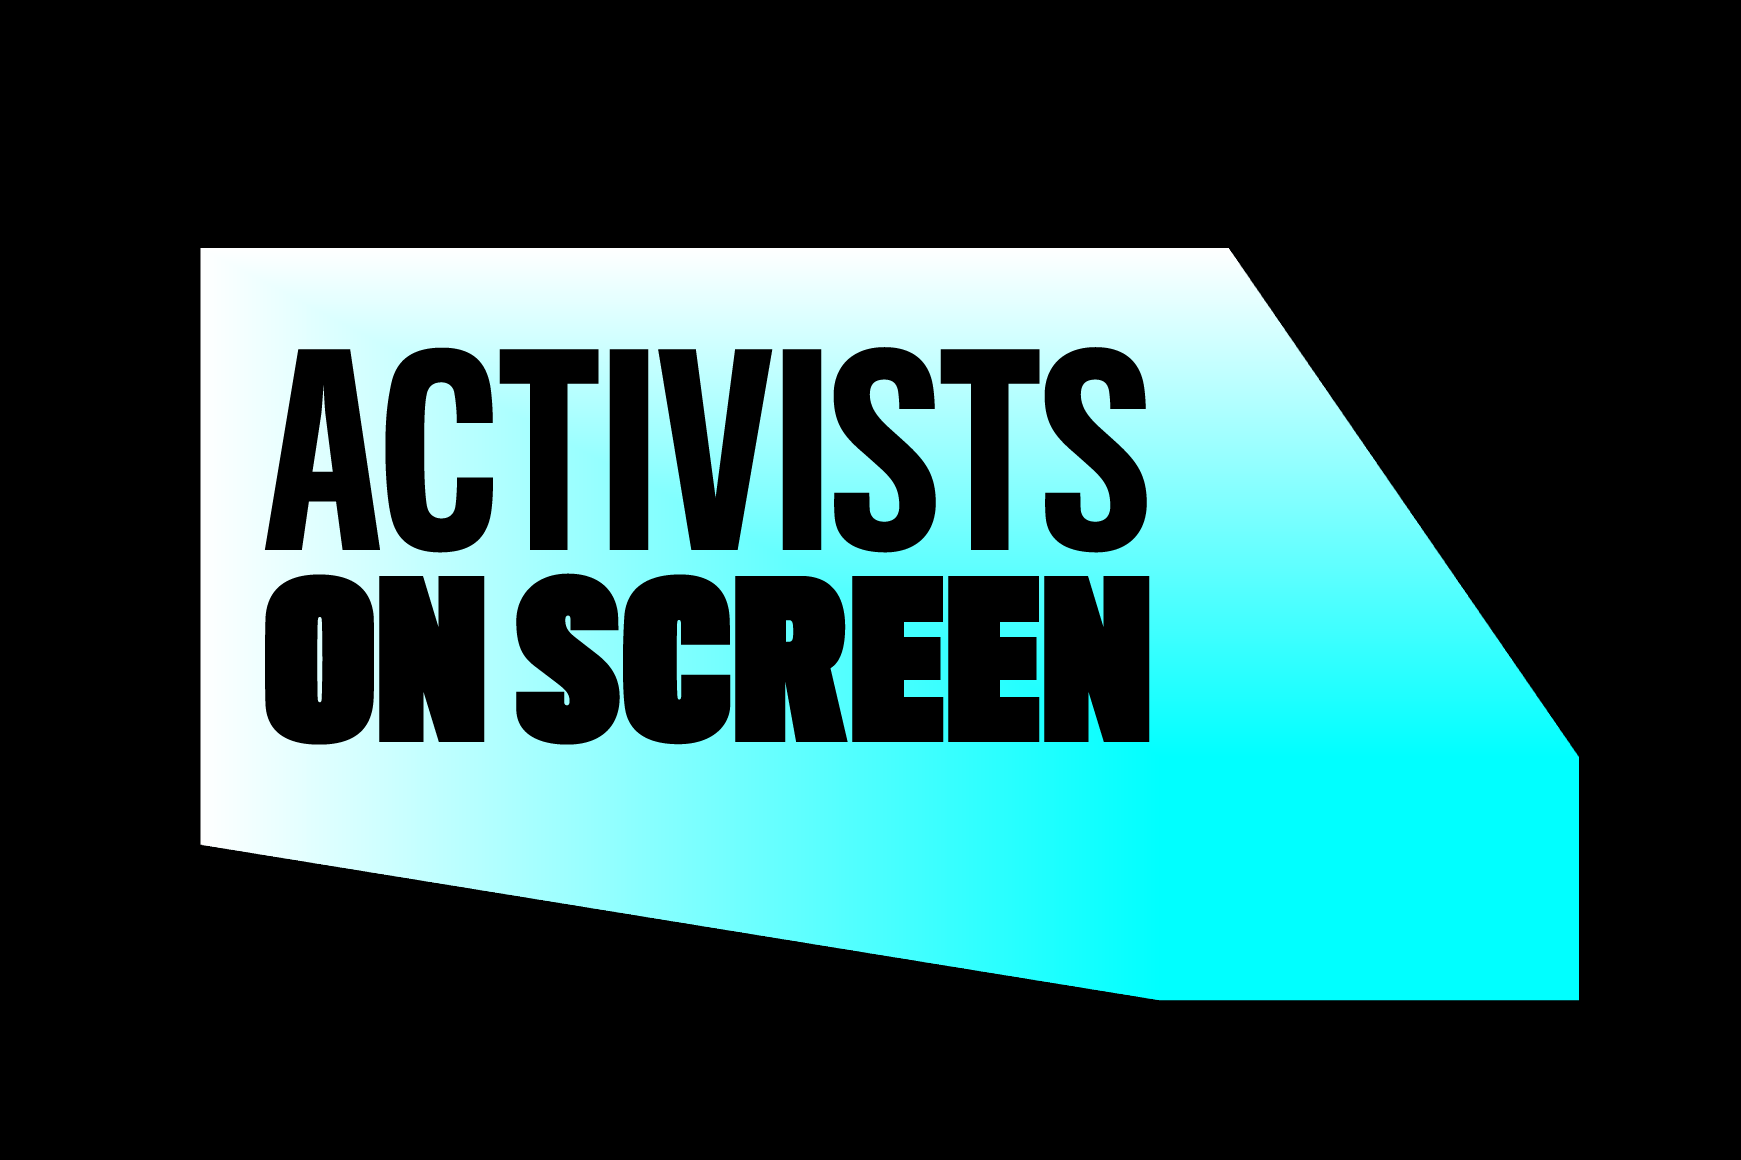 Fond noir avec un graphique bleu qui apparaît en train de lire le texte « Activistes à l'écran »